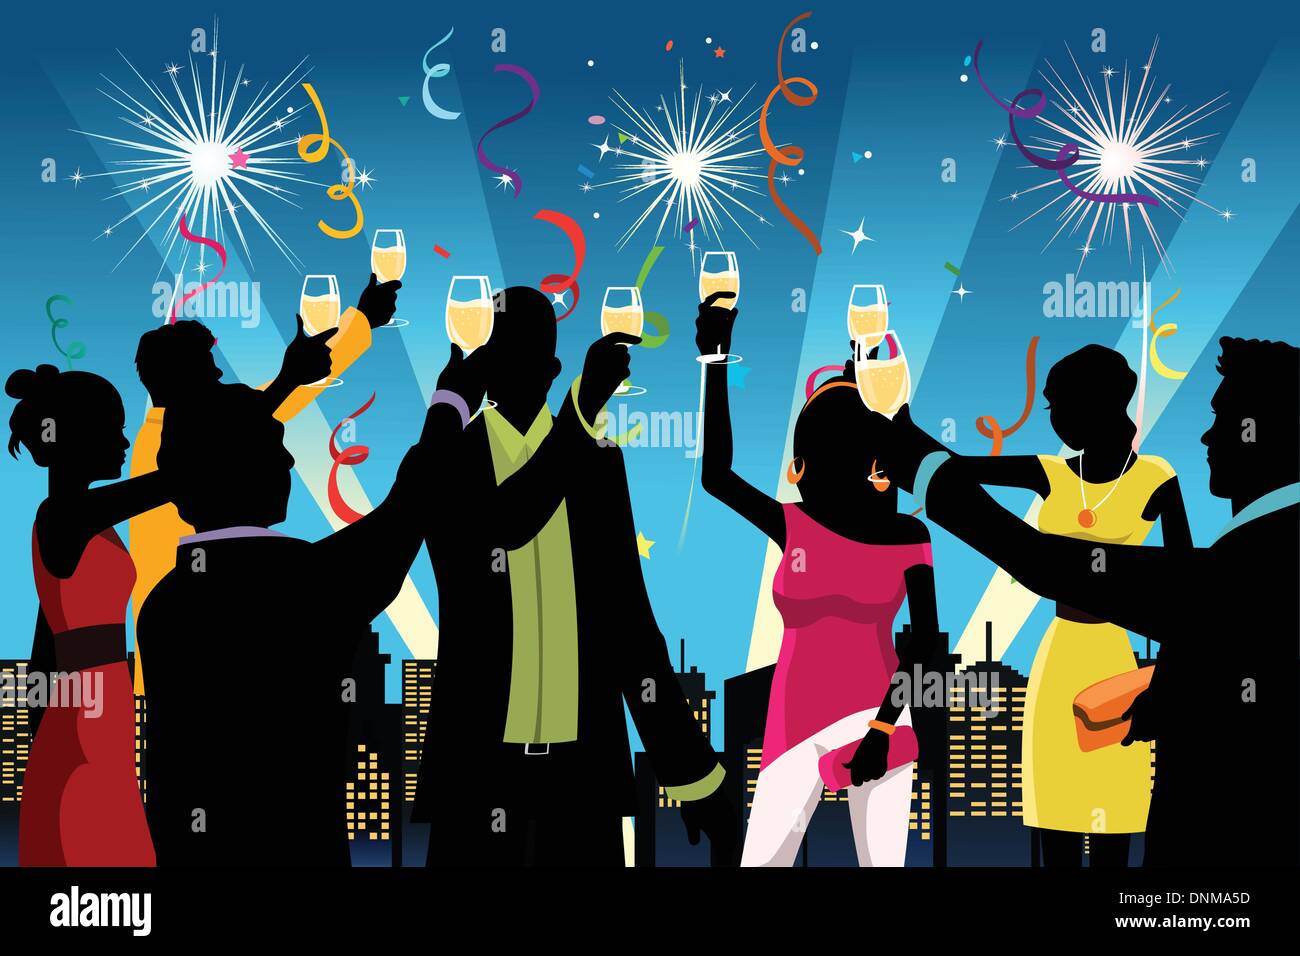 Una illustrazione vettoriale di silhouette di giovani aventi nuovo anno la celebrazione della festa Illustrazione Vettoriale